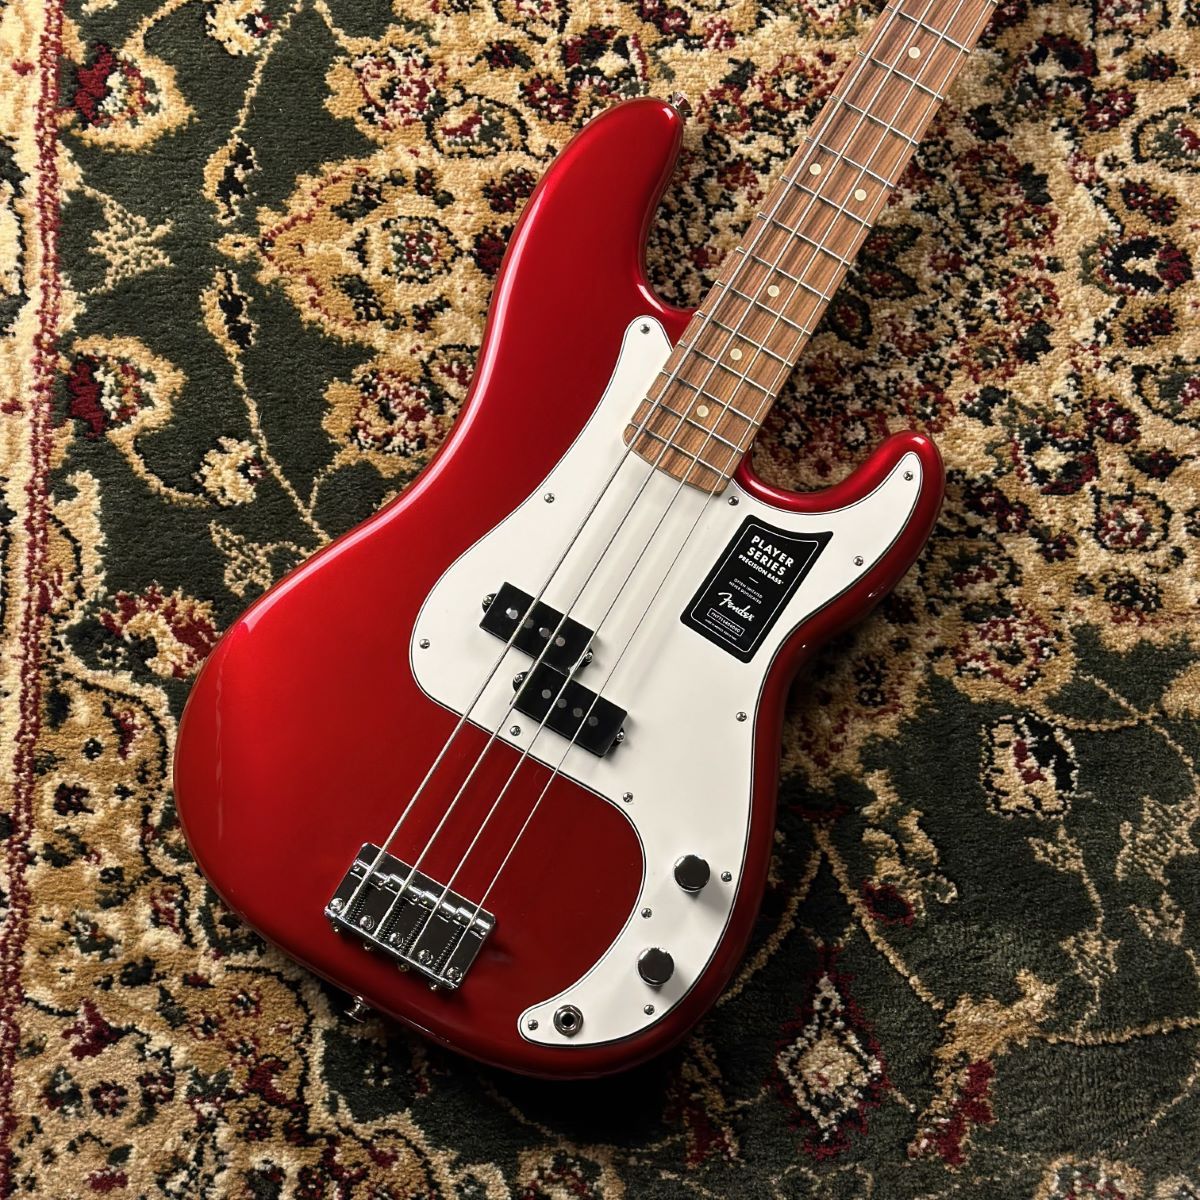 CONTENTSFender Player Precision Bass Candy Apple Redこの商品について技術者による安心のアフターフォローギターアドバイザーが楽器選びをサポート最新情報を手に入れよう音楽をもっと楽しみたい方は音楽教室がおススメ♪お問い合わせFender Player  […]